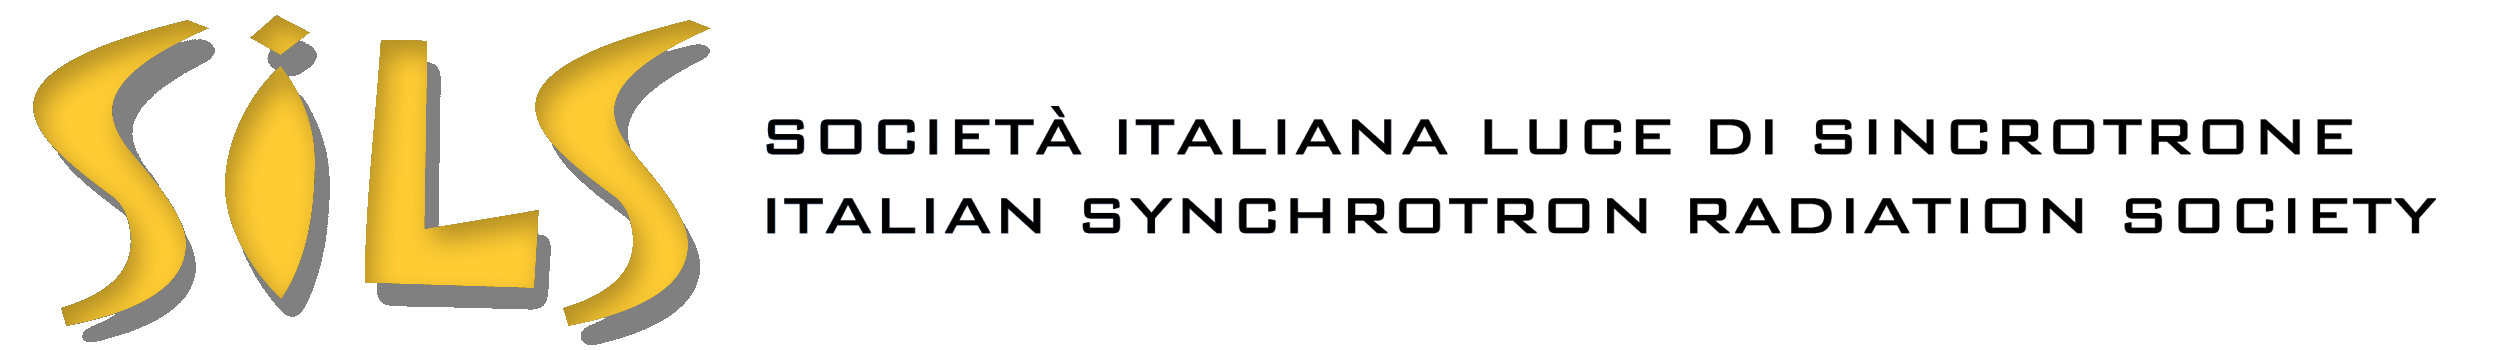 SILS, Italian Synchrotron Radiation Society